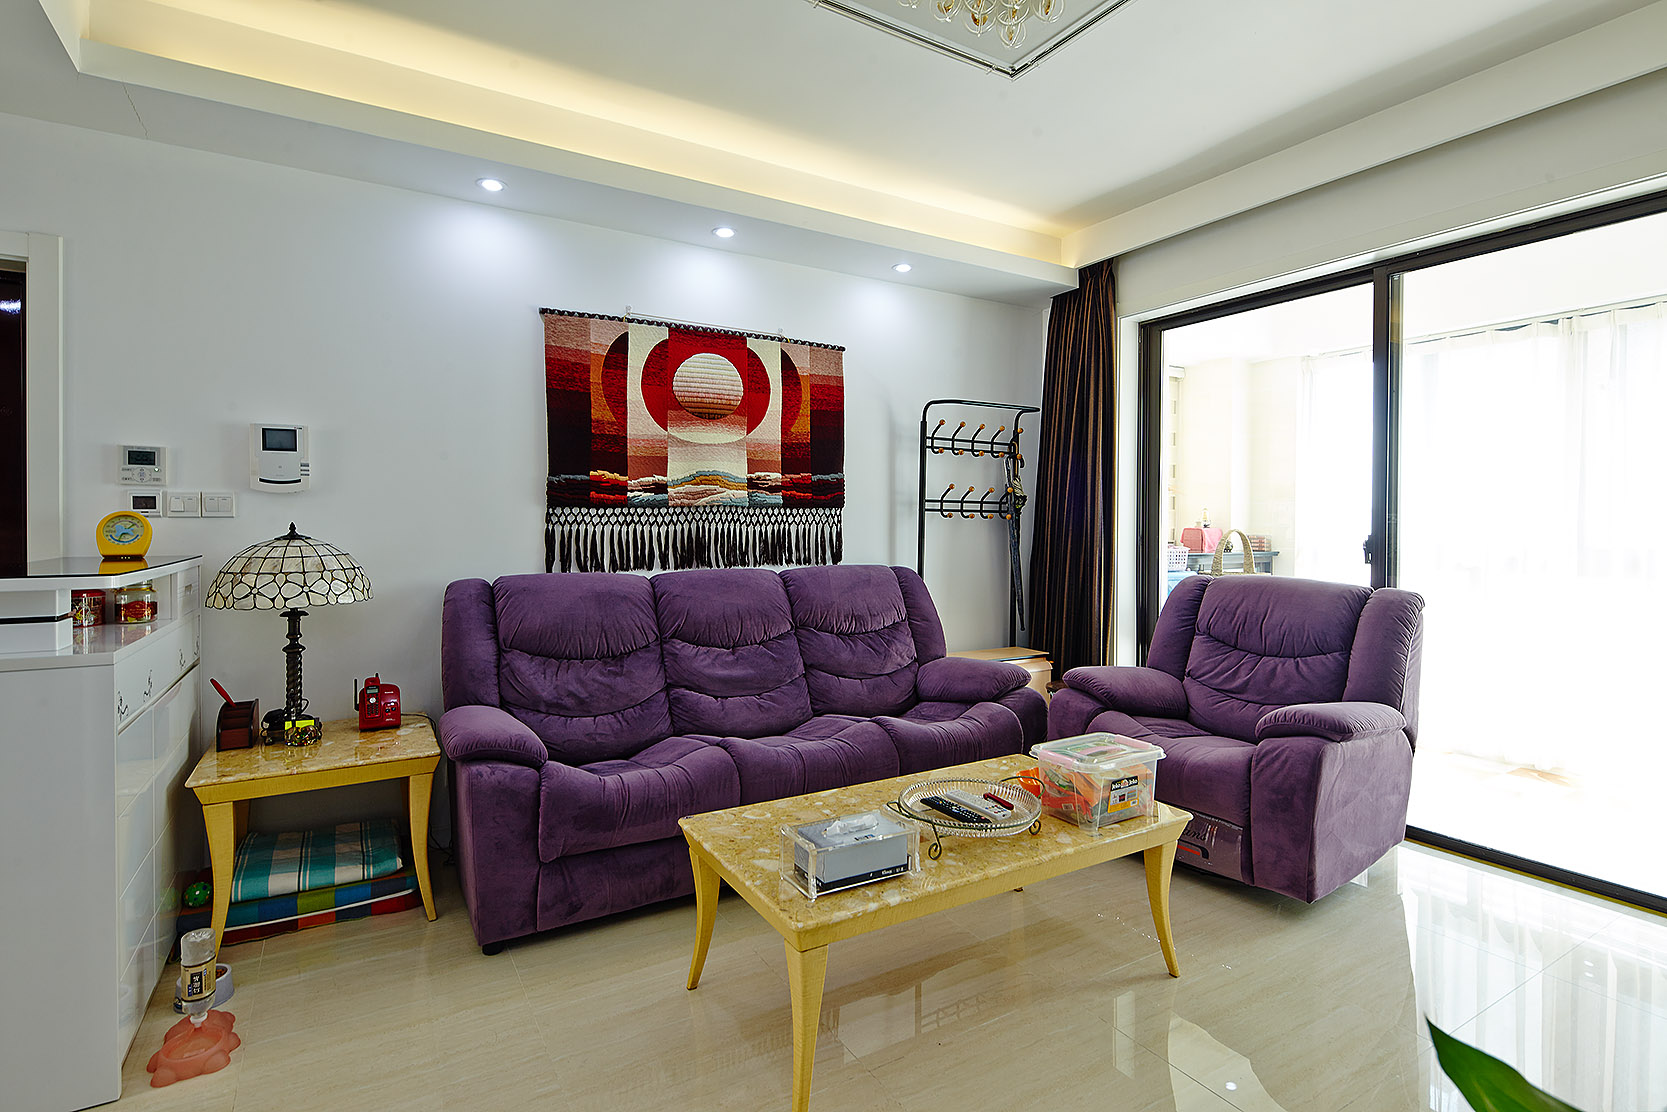 客厅耀眼的紫色沙发，是主人精心挑选的颜色。沙发上更有一副古典的针织挂画，使客厅的空间优雅而气派。
